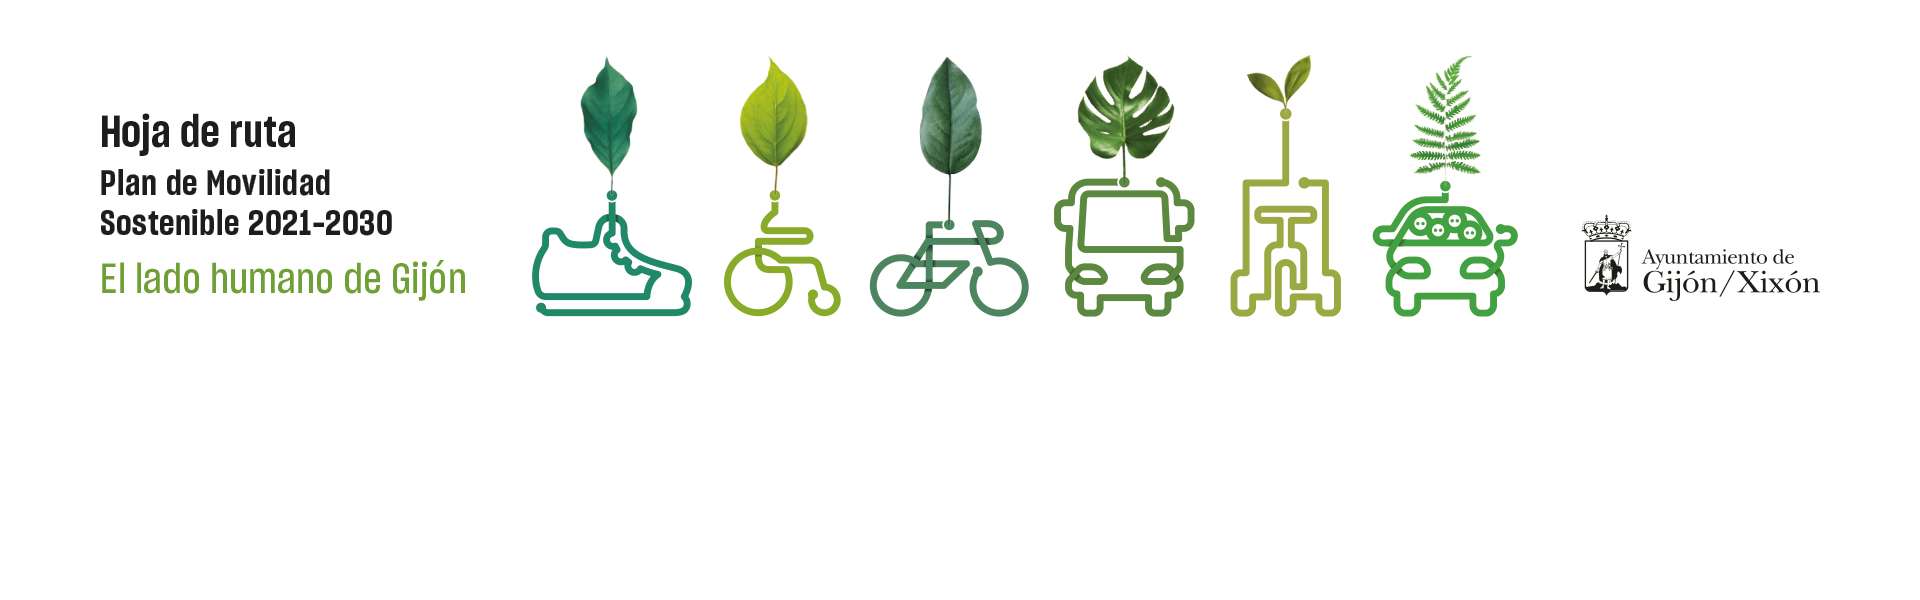 Plan de Movilidad Sostenible 2021-2030